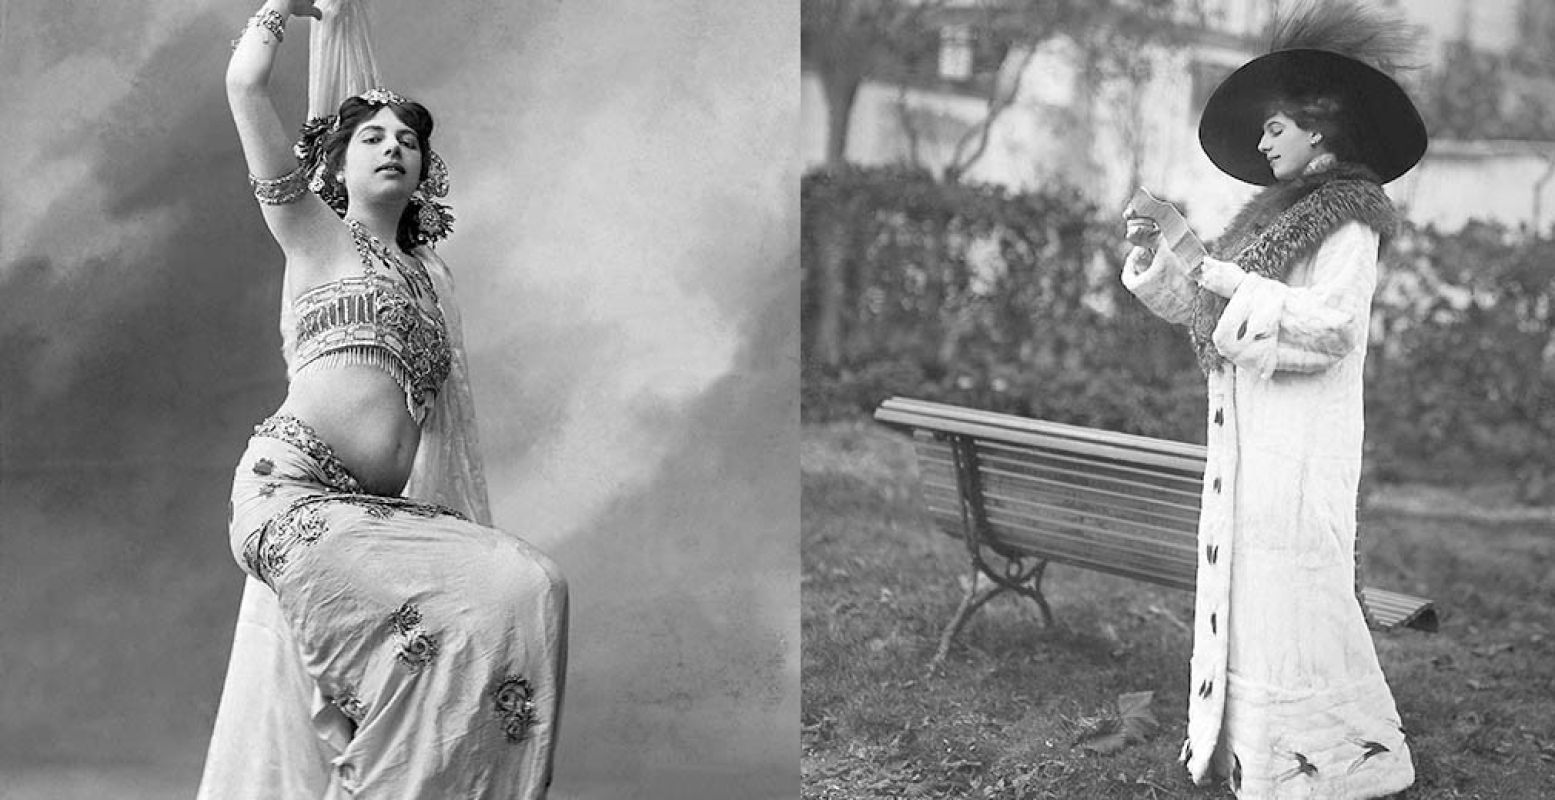 Foto: (links) Mata Hari als danseres in Parijs, 1905, Boyer, P., Collectie Fries Museum, Leeuwarden. Foto: (rechts) Mata Hari op de renbaan, 1911, Collectie Fries Museum, Leeuwarden.